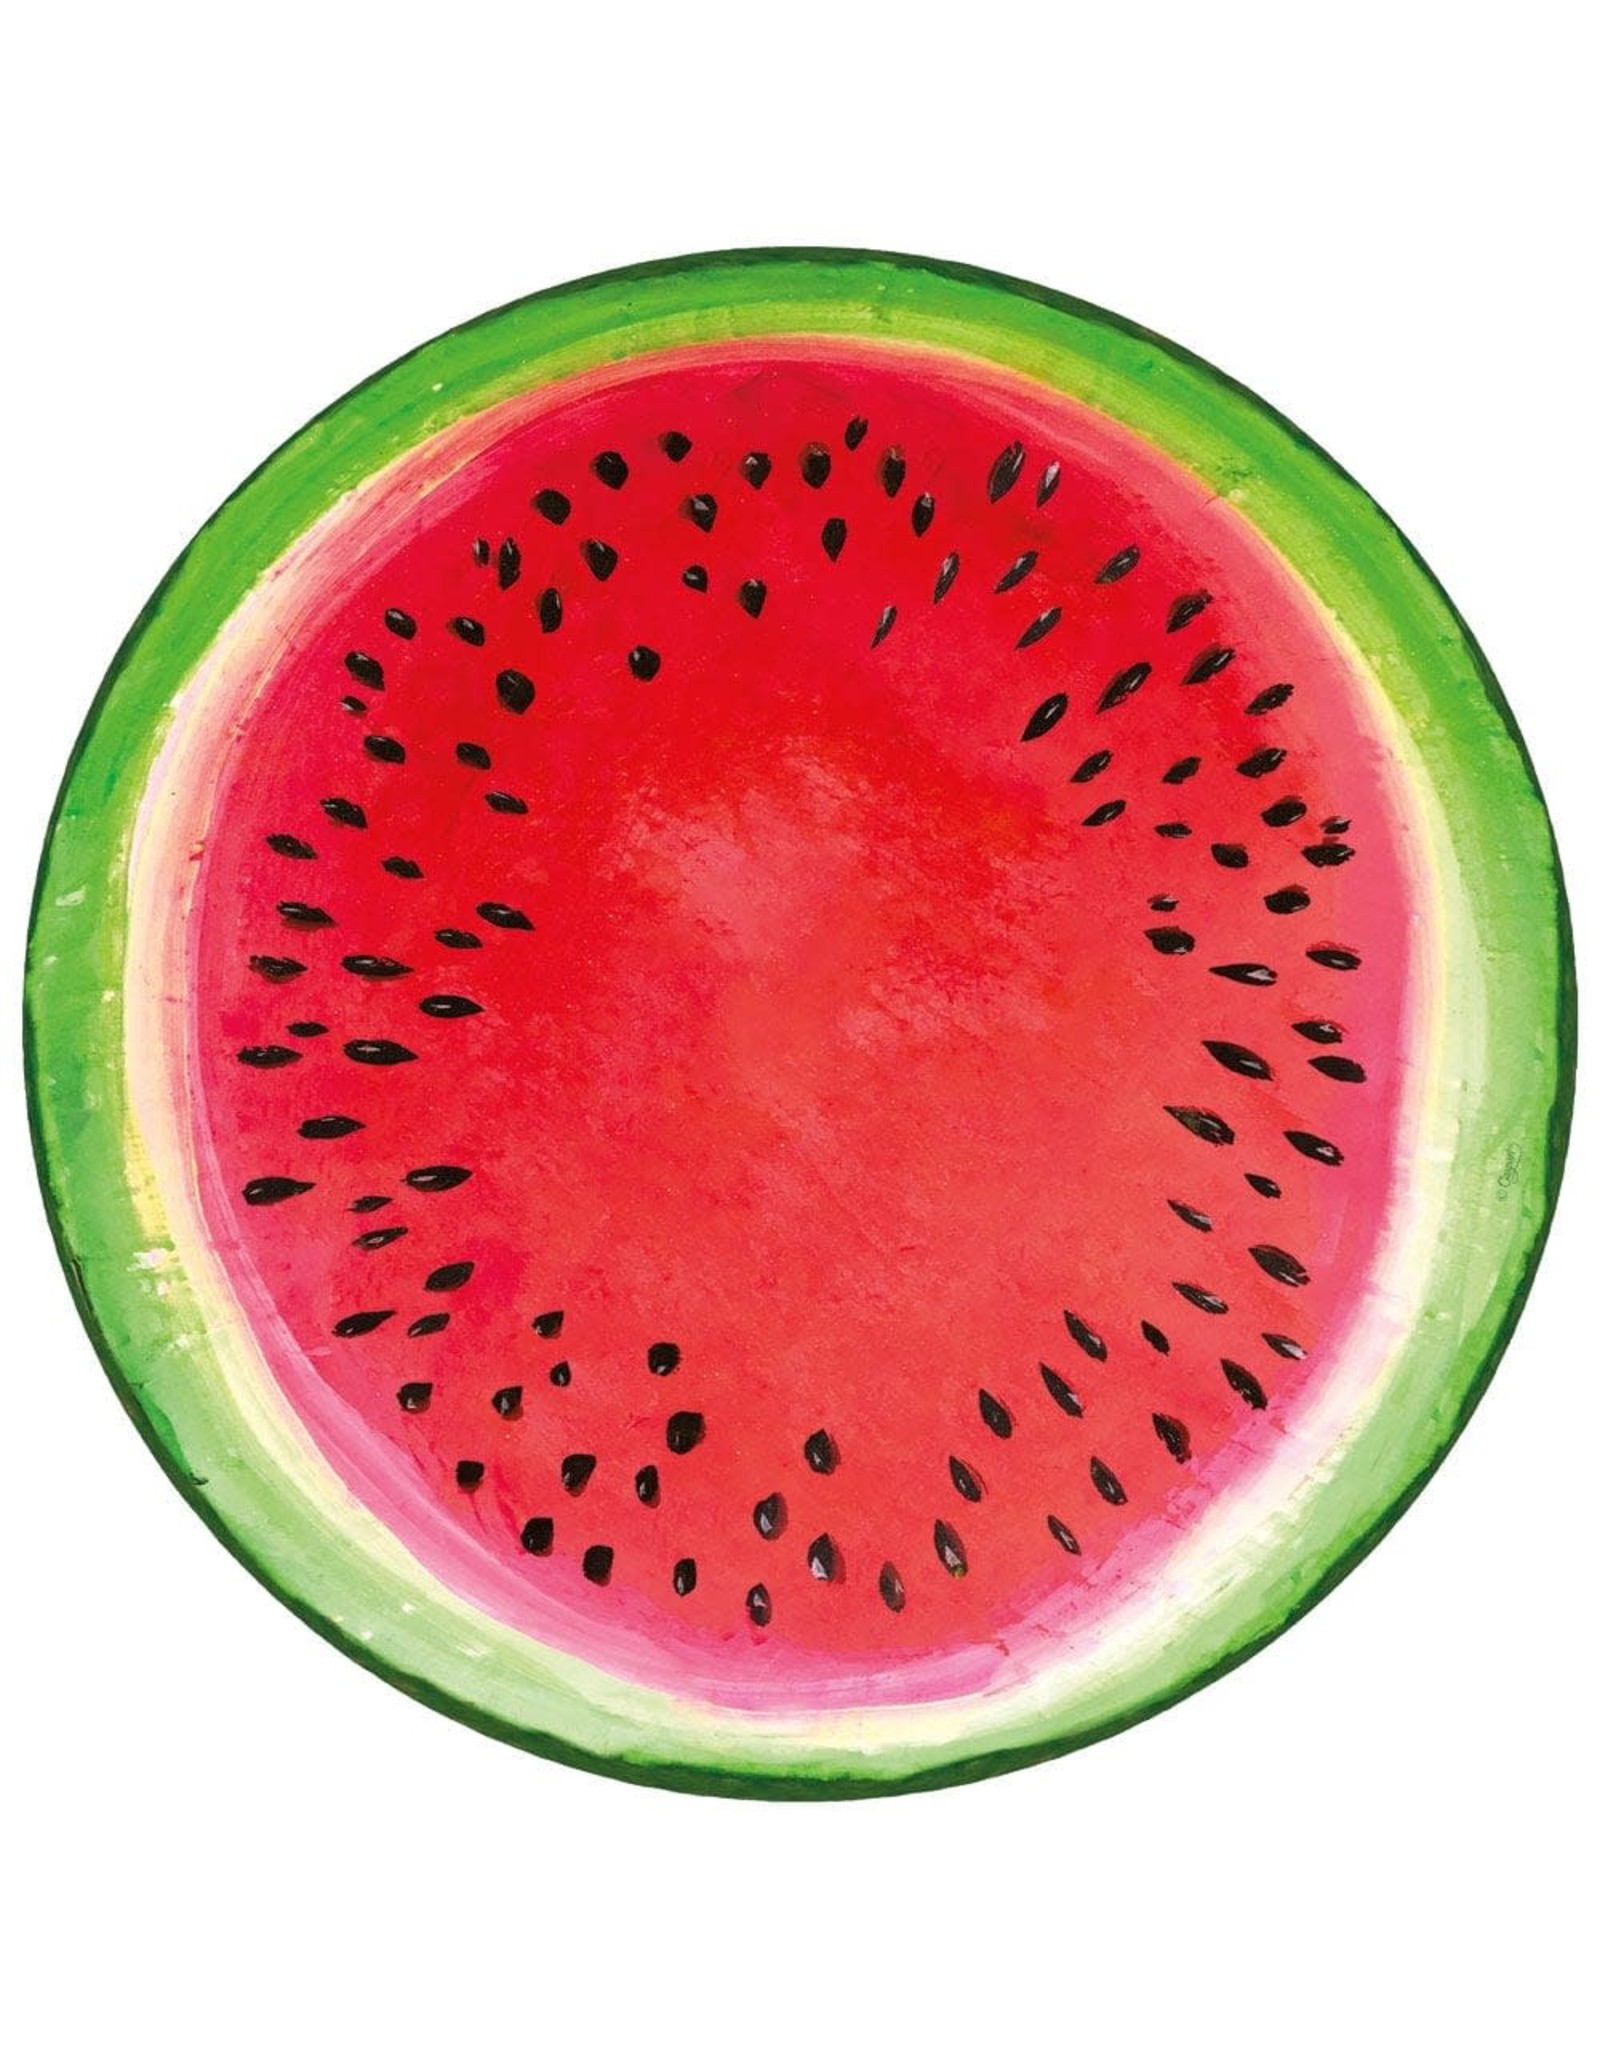 Caspari Kahlo's Collage Watermelon Paper Placemats Round Placemat 12pk